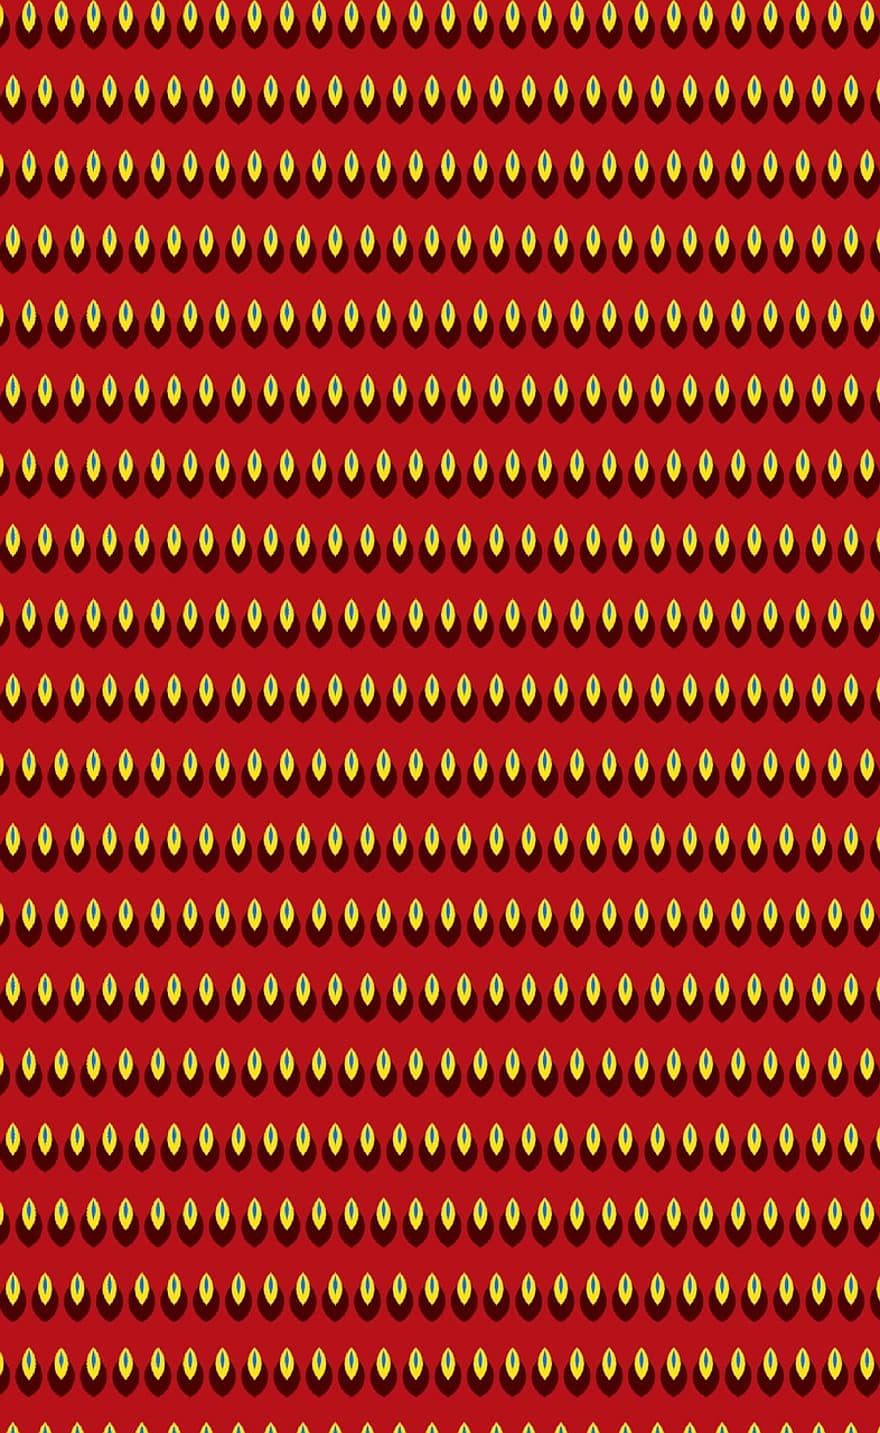 mønster, bakgrunn, design, tekstur, farger, rød bakgrunn, rød tekstur, Rød design, rødt mønster